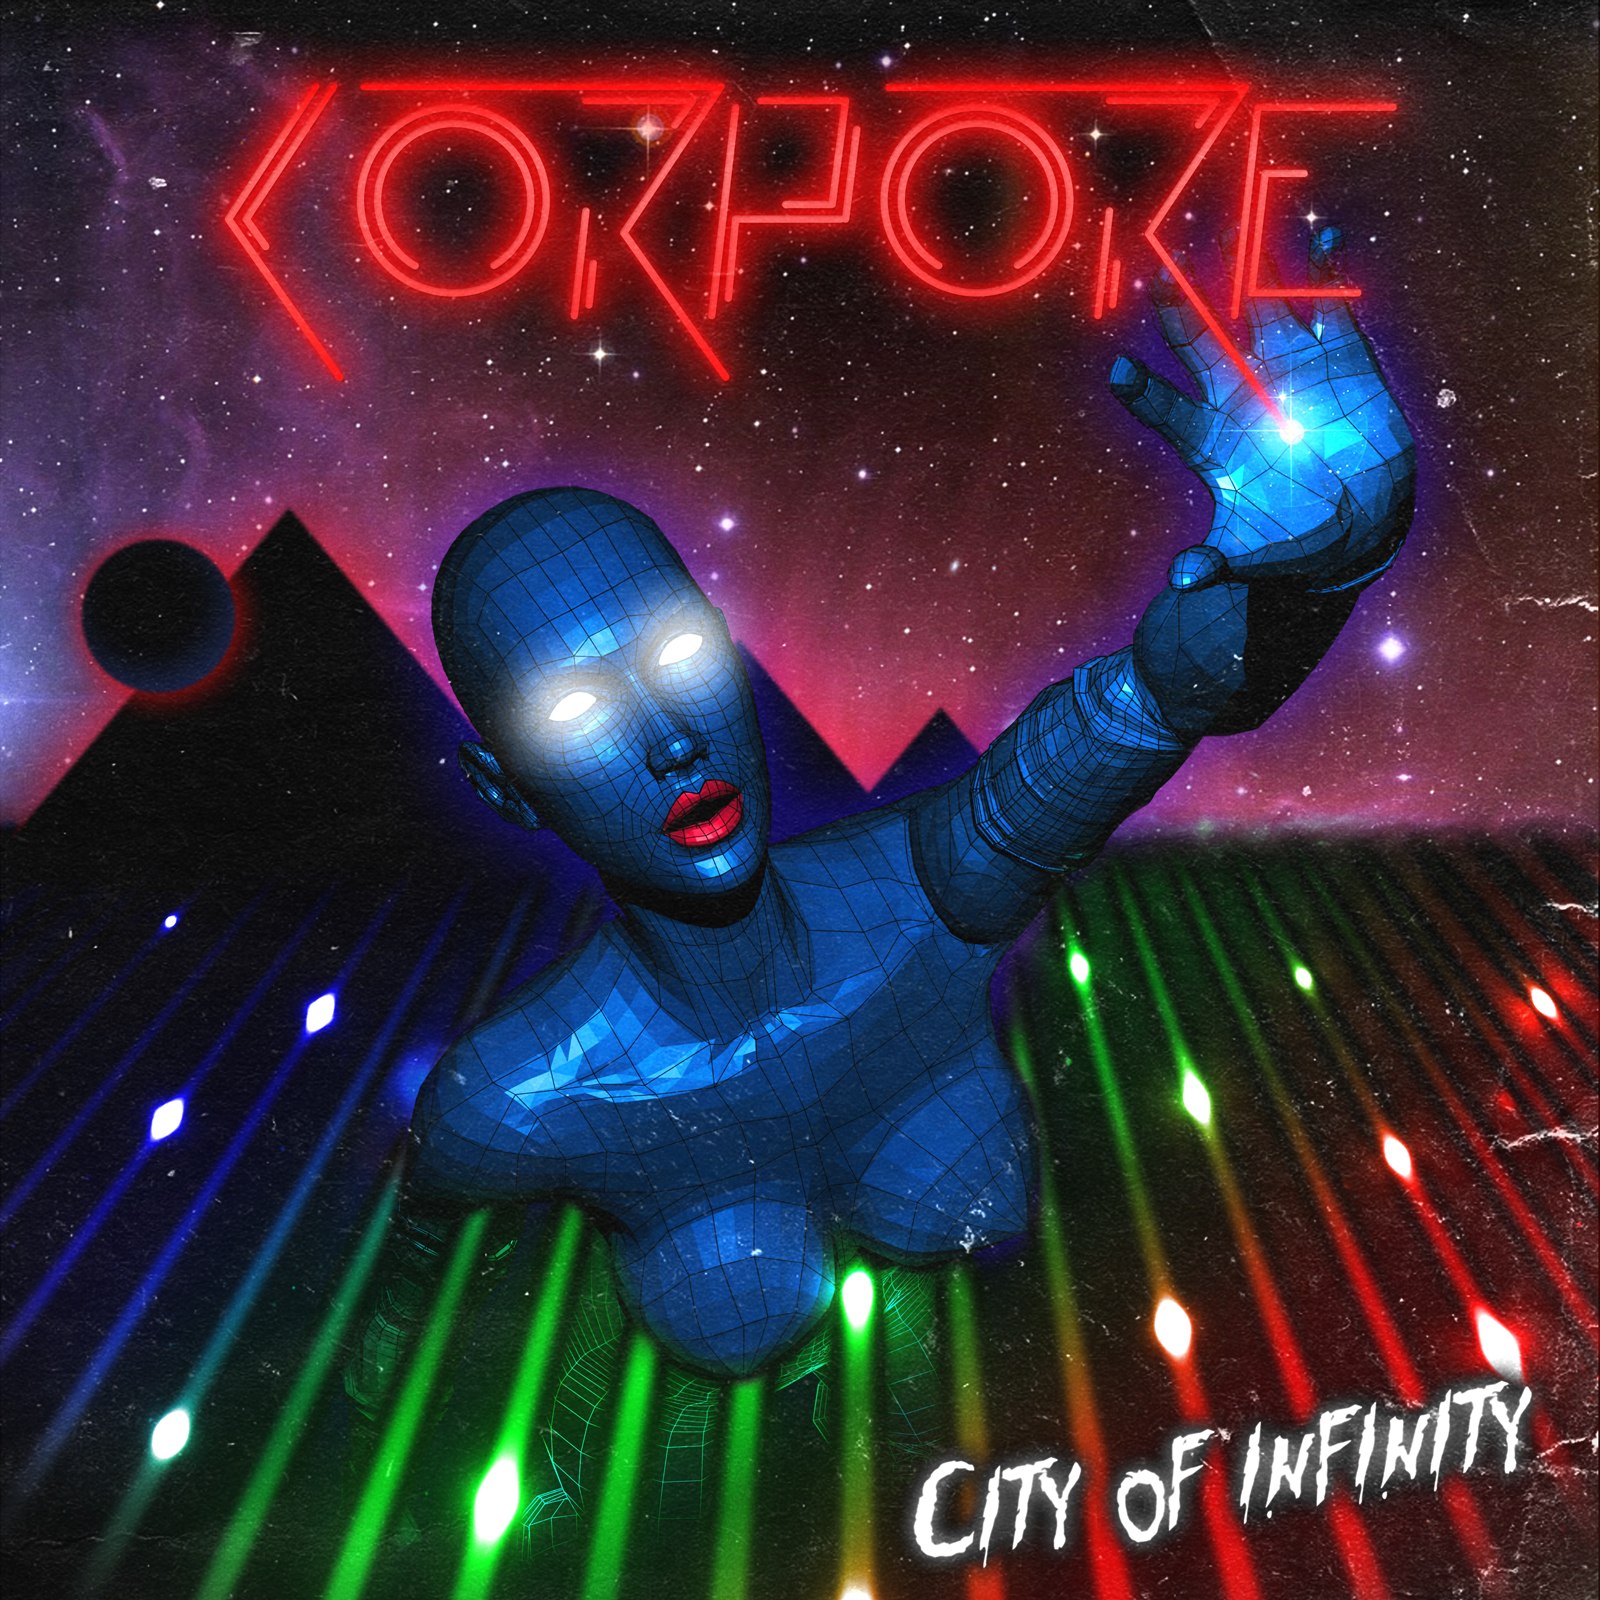 Corpore - City Of Infinity (2012)